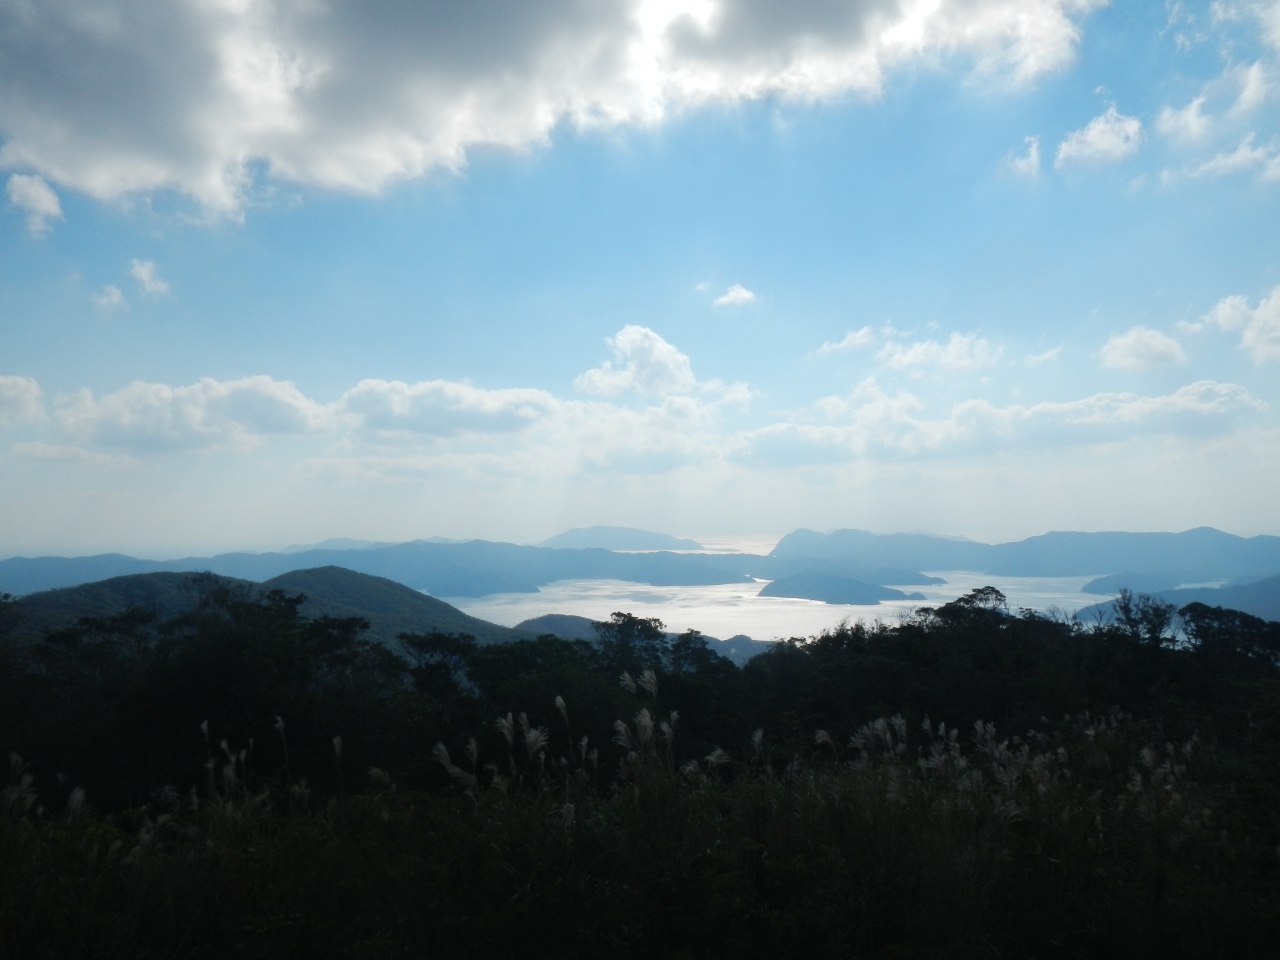 奄美大島の油井岳展望台